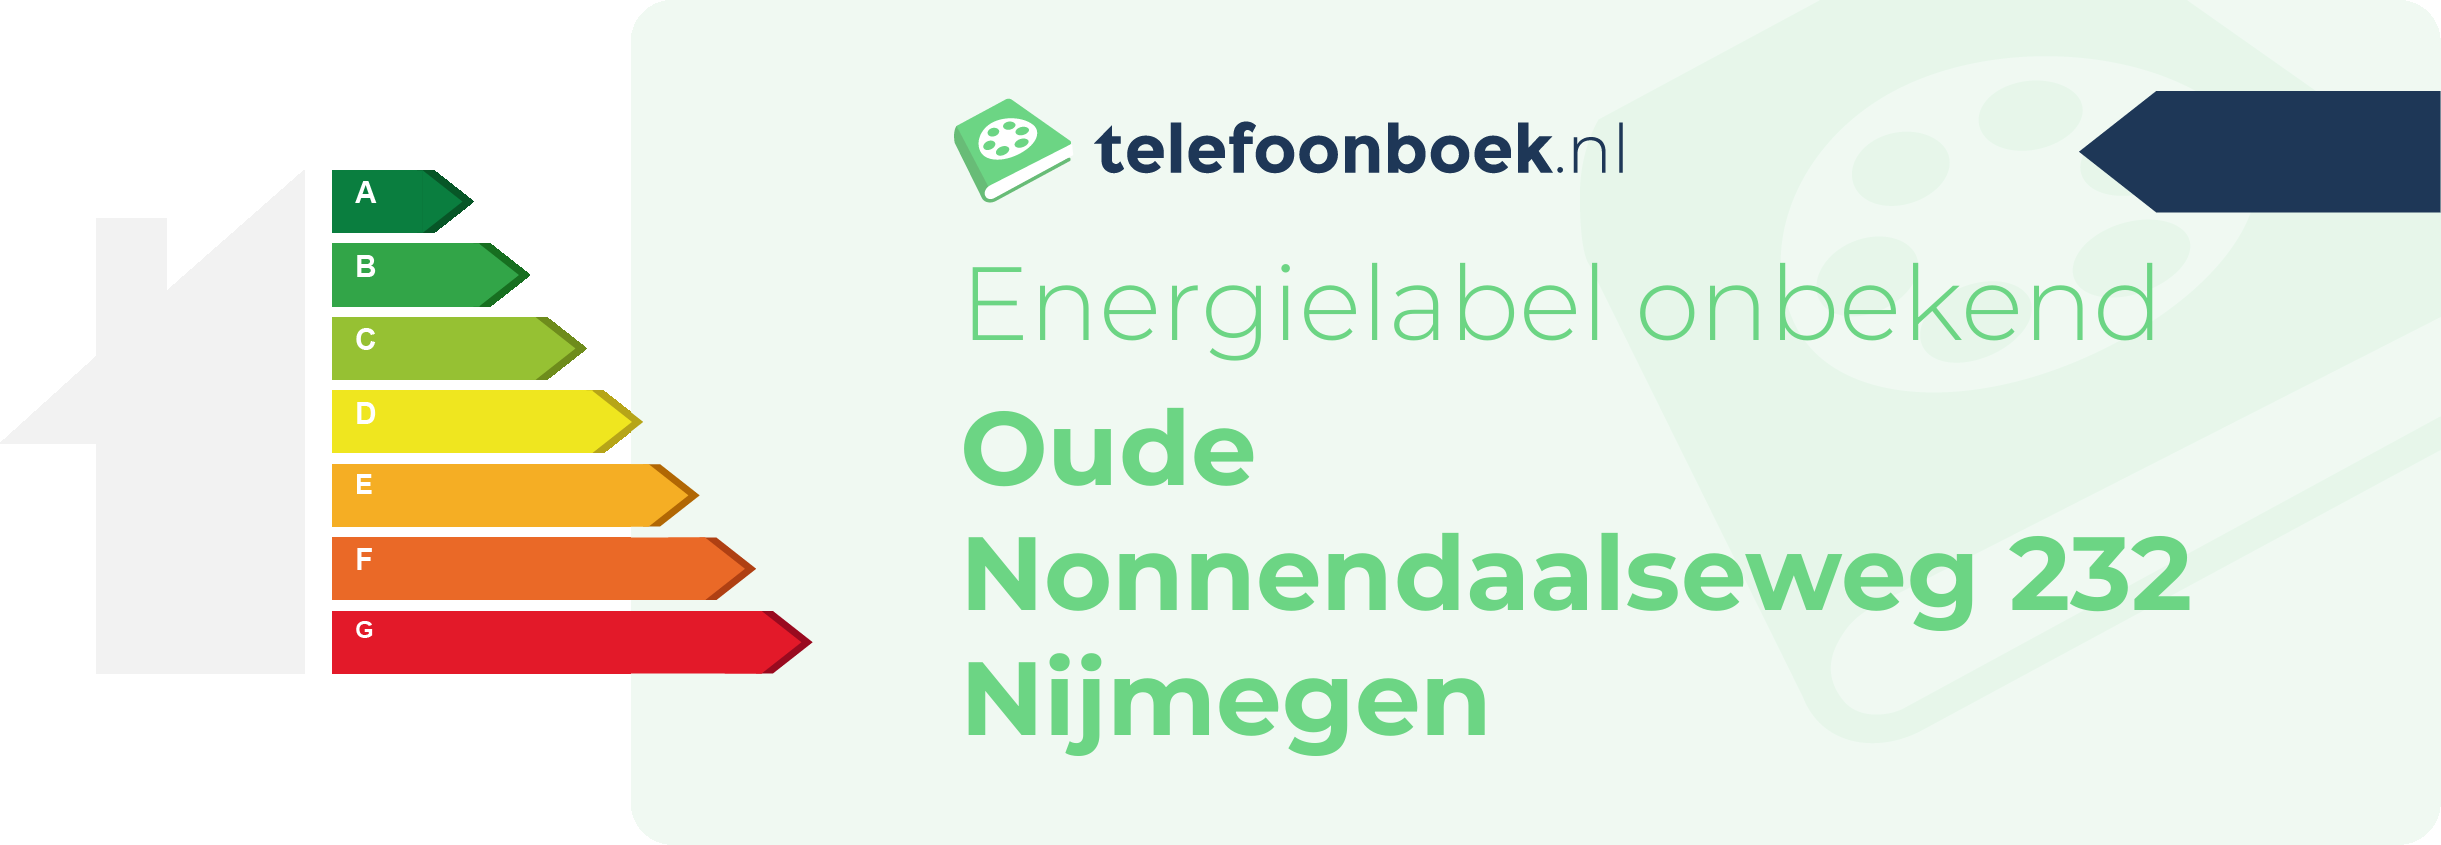 Energielabel Oude Nonnendaalseweg 232 Nijmegen